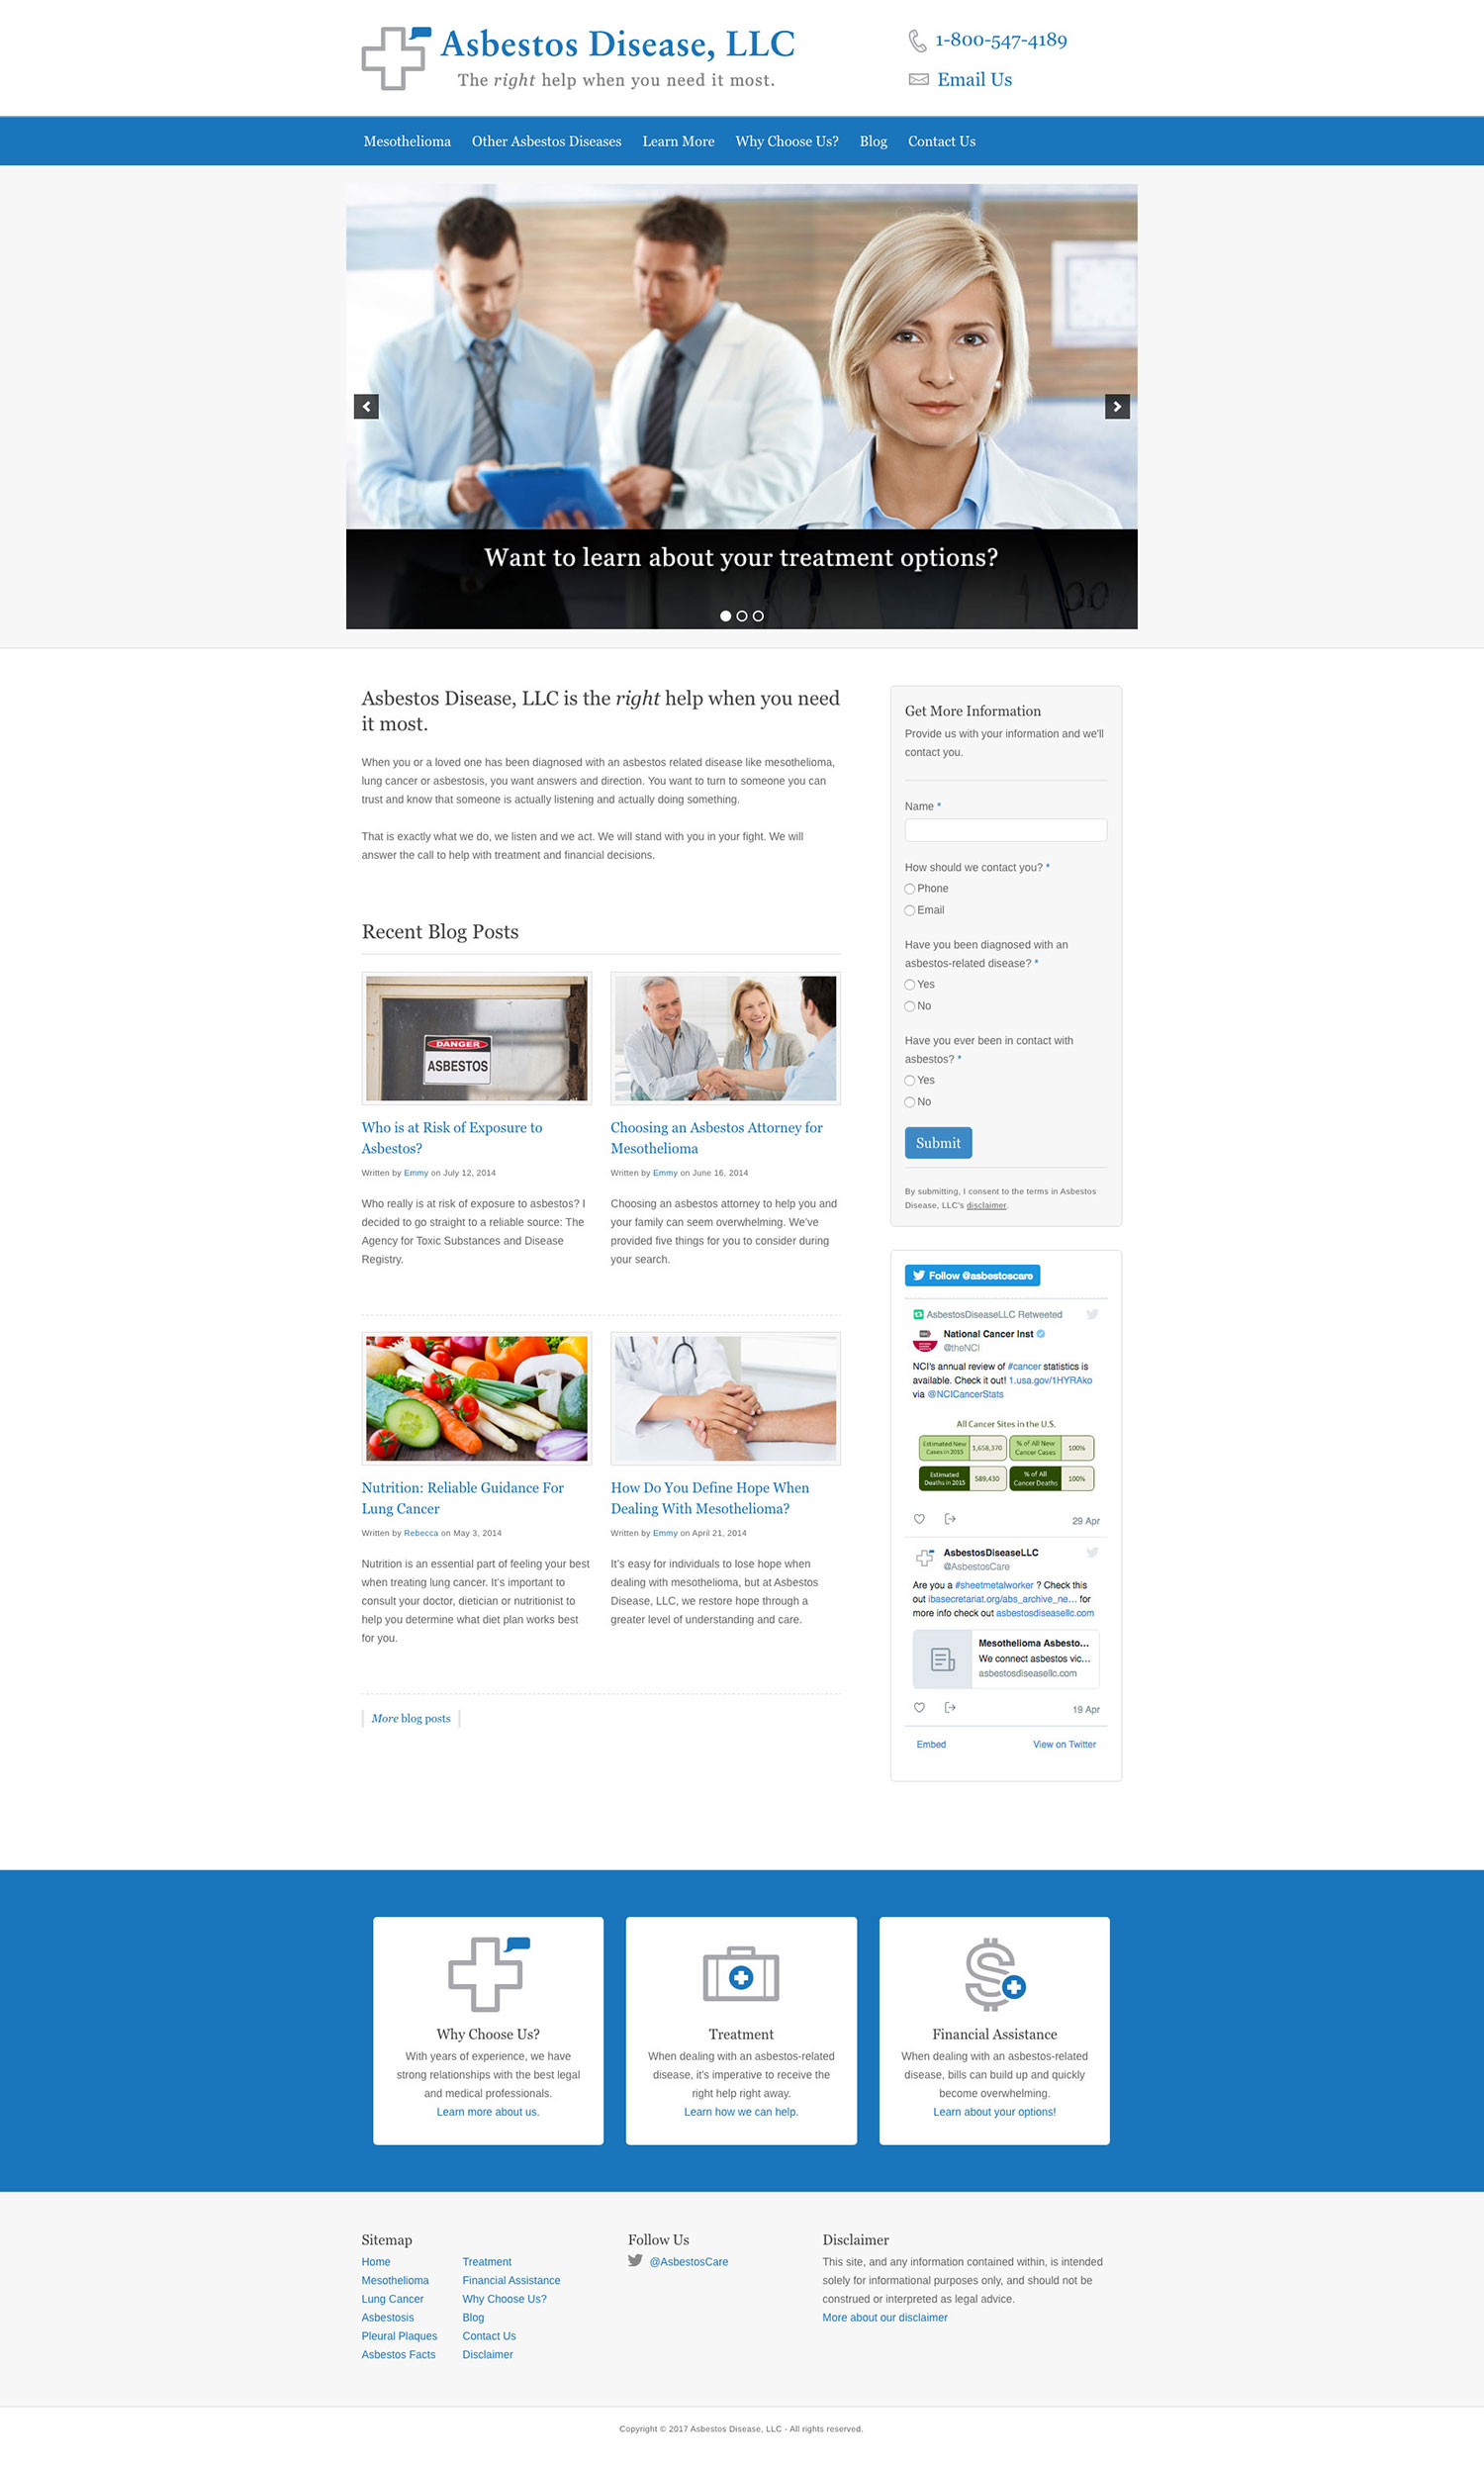 Asbestos Disease, LLC - New Homepage - Browser View